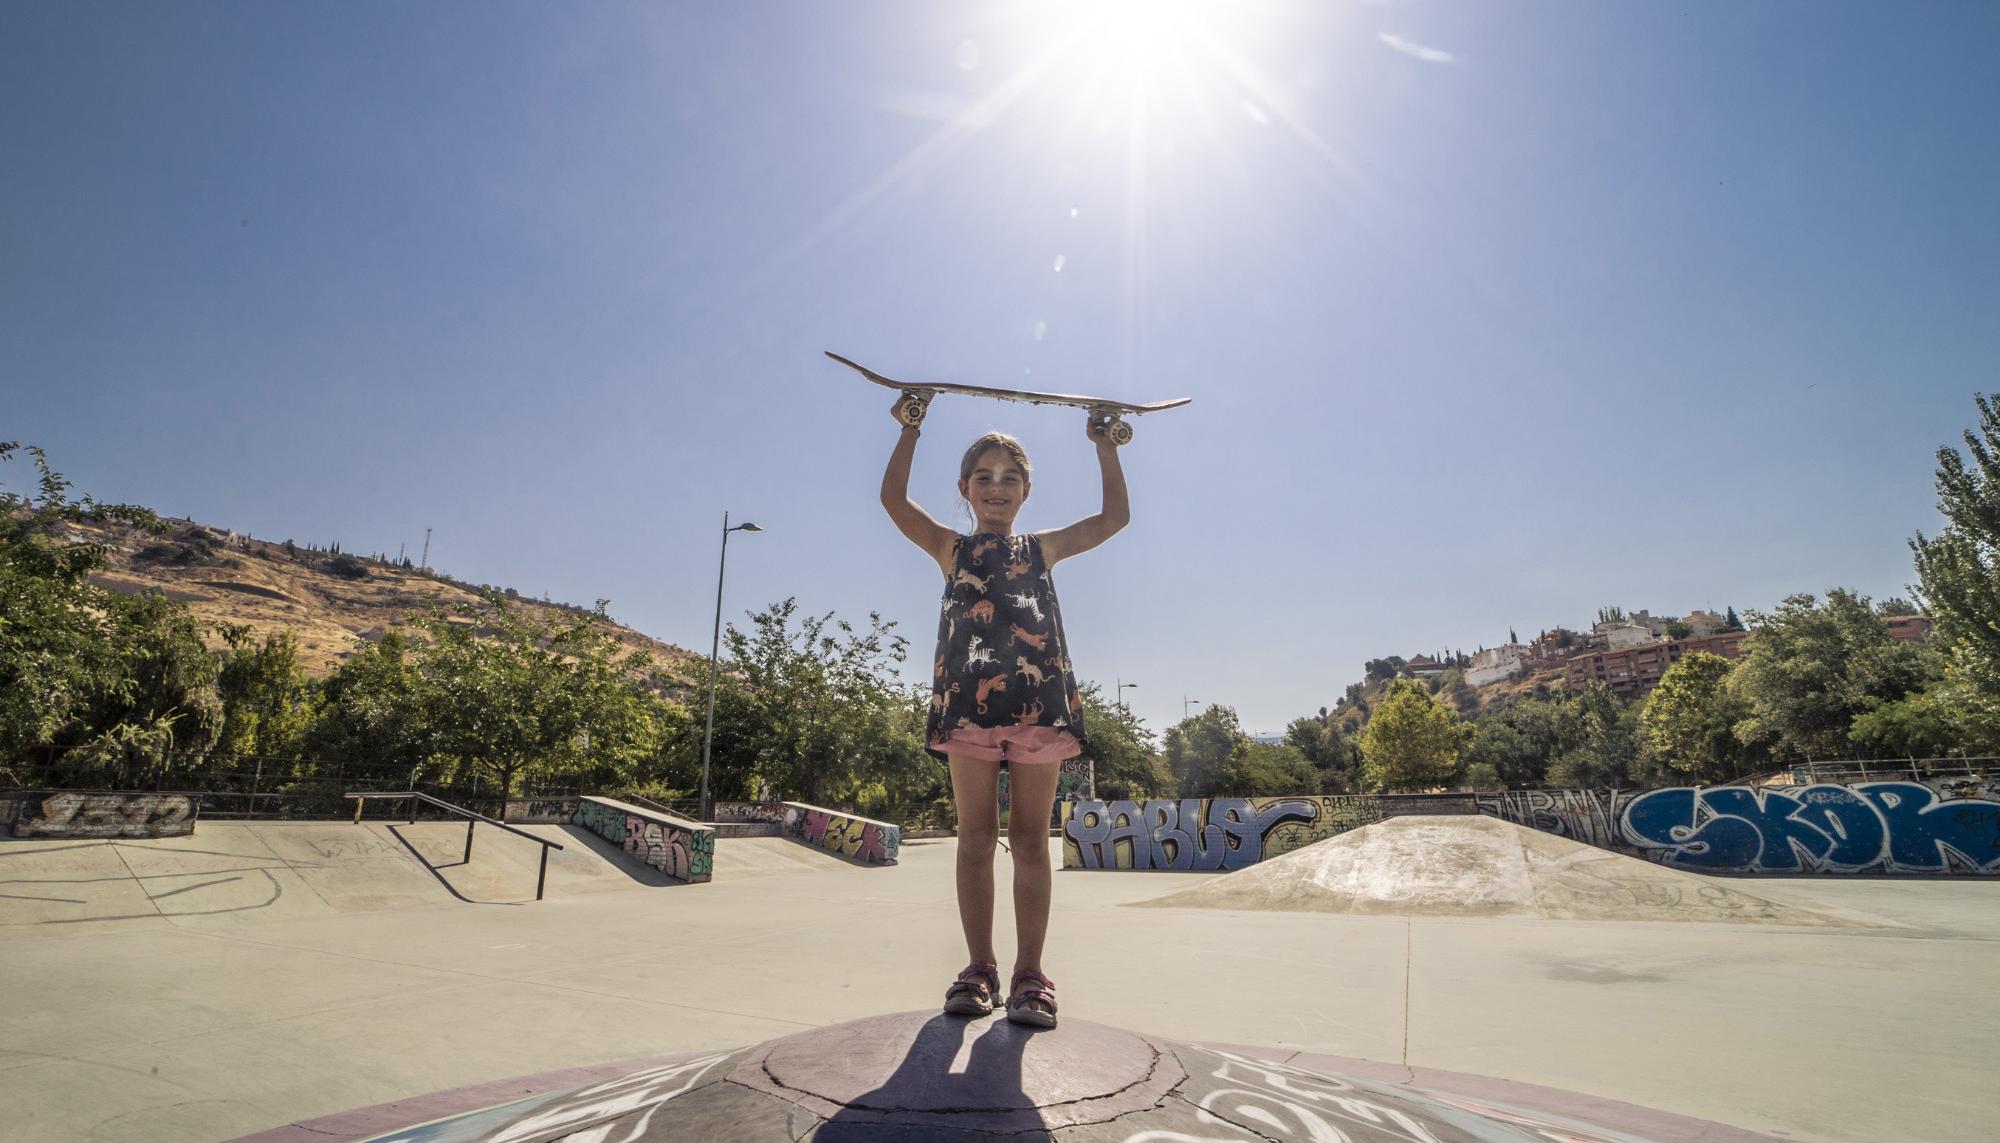 Skaters en el skatepark Bola de Oro, Granada - 3